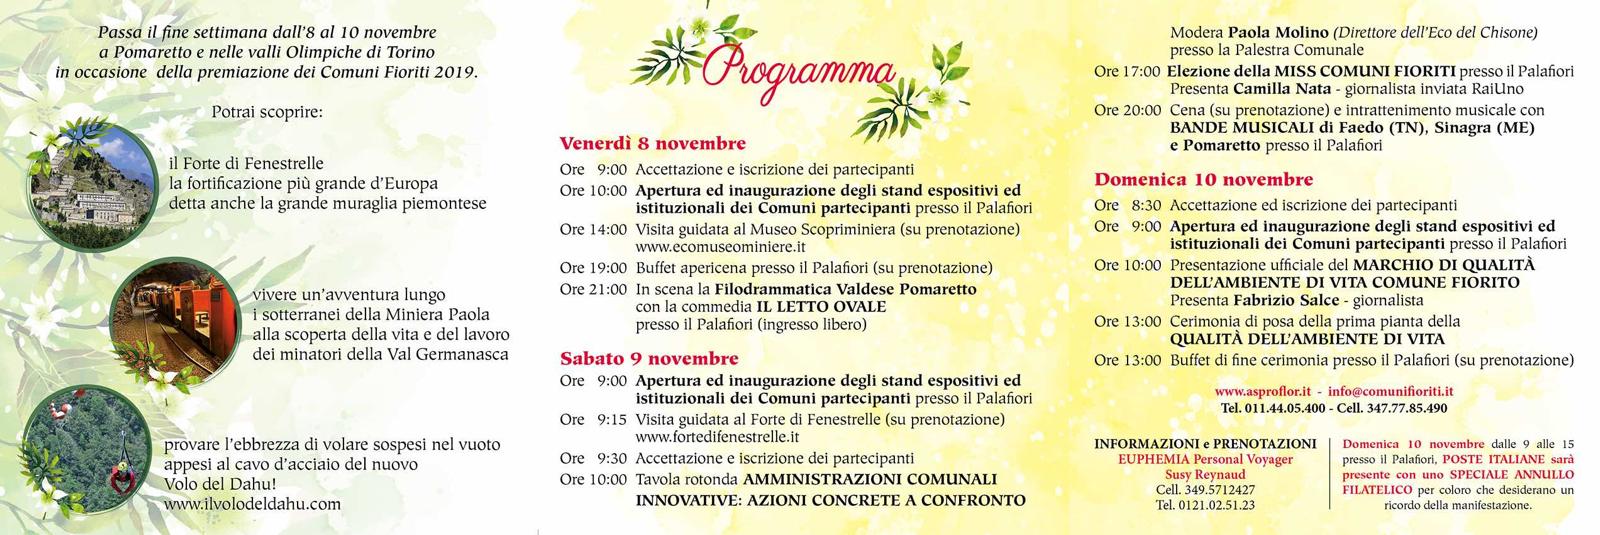 Programma del Meeting Nazionale del Marchio di Qualità Ambiente di Vita  Comune Fiorito a Pomaretto dall 8 al 10 Novembre 2019.